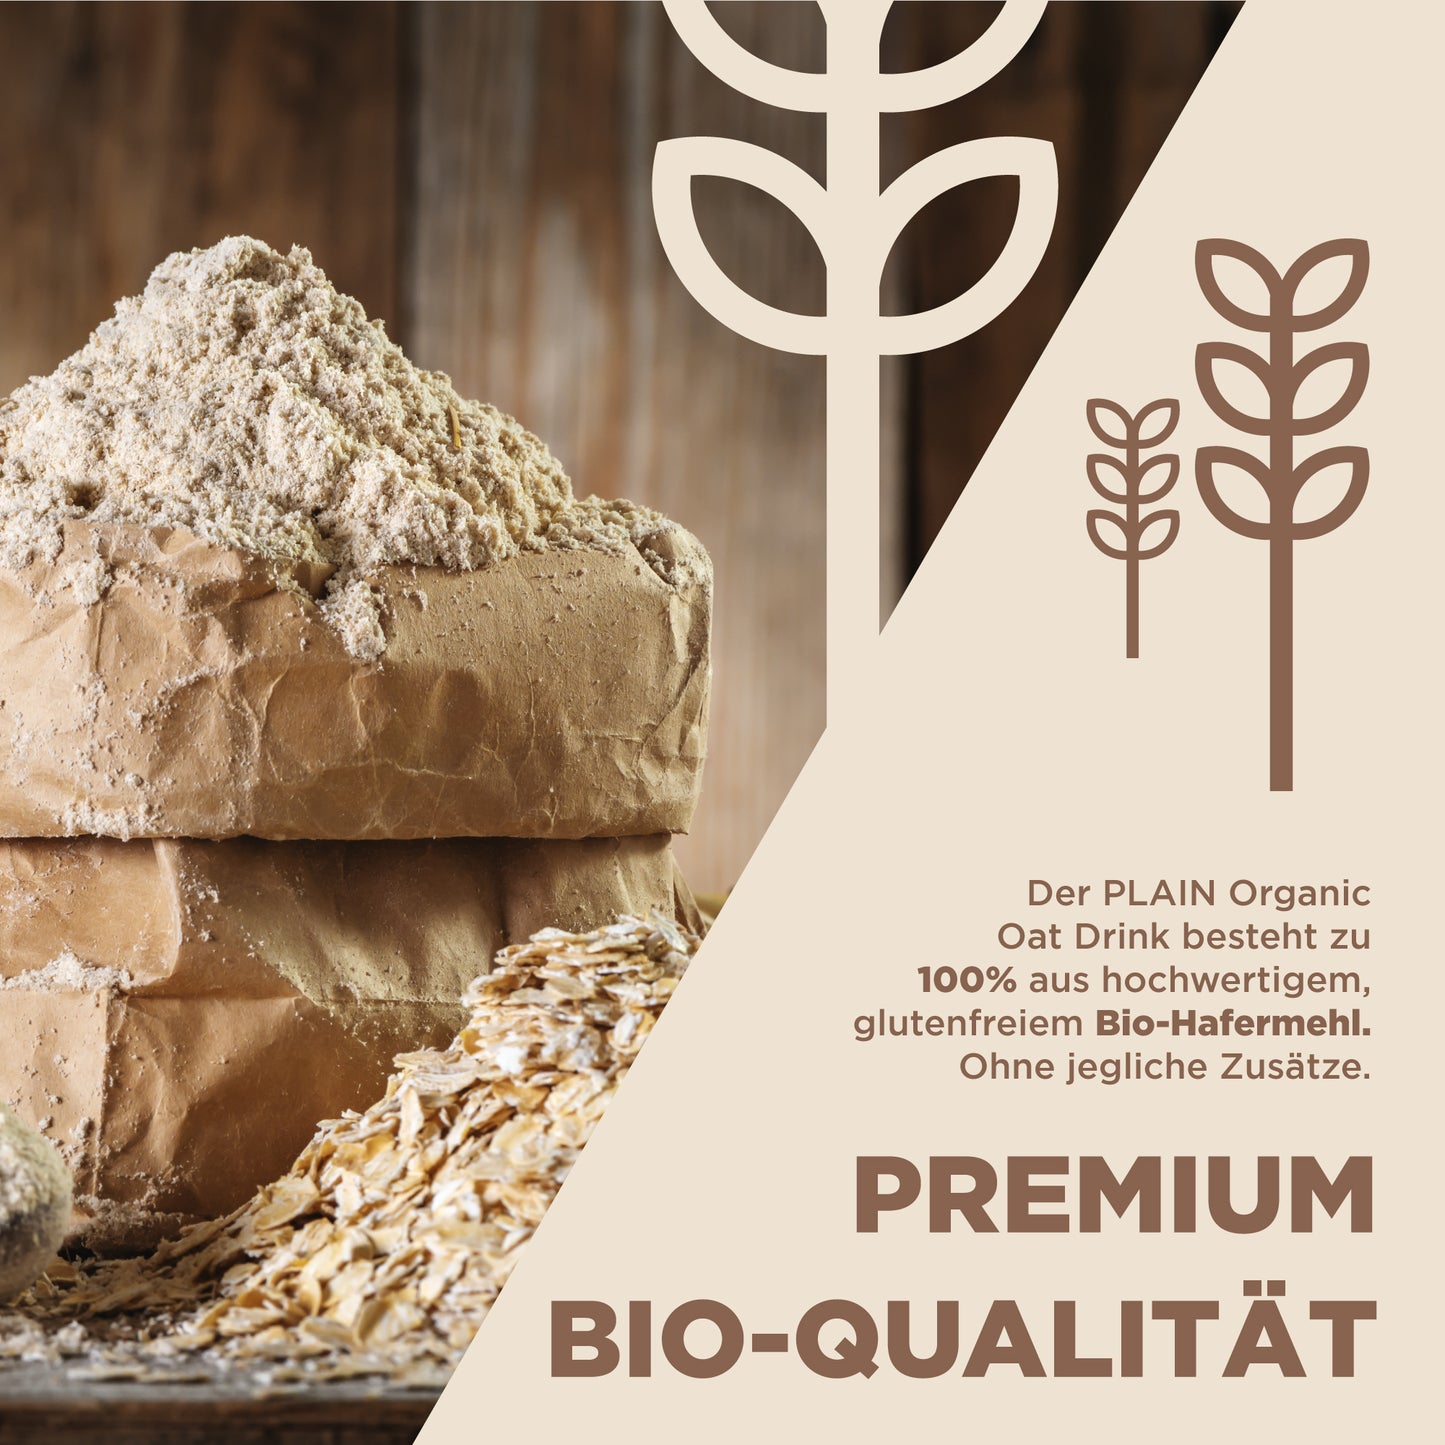 Premium Hafermilchpulver aus hochwertigem Bio-Hafermehl 